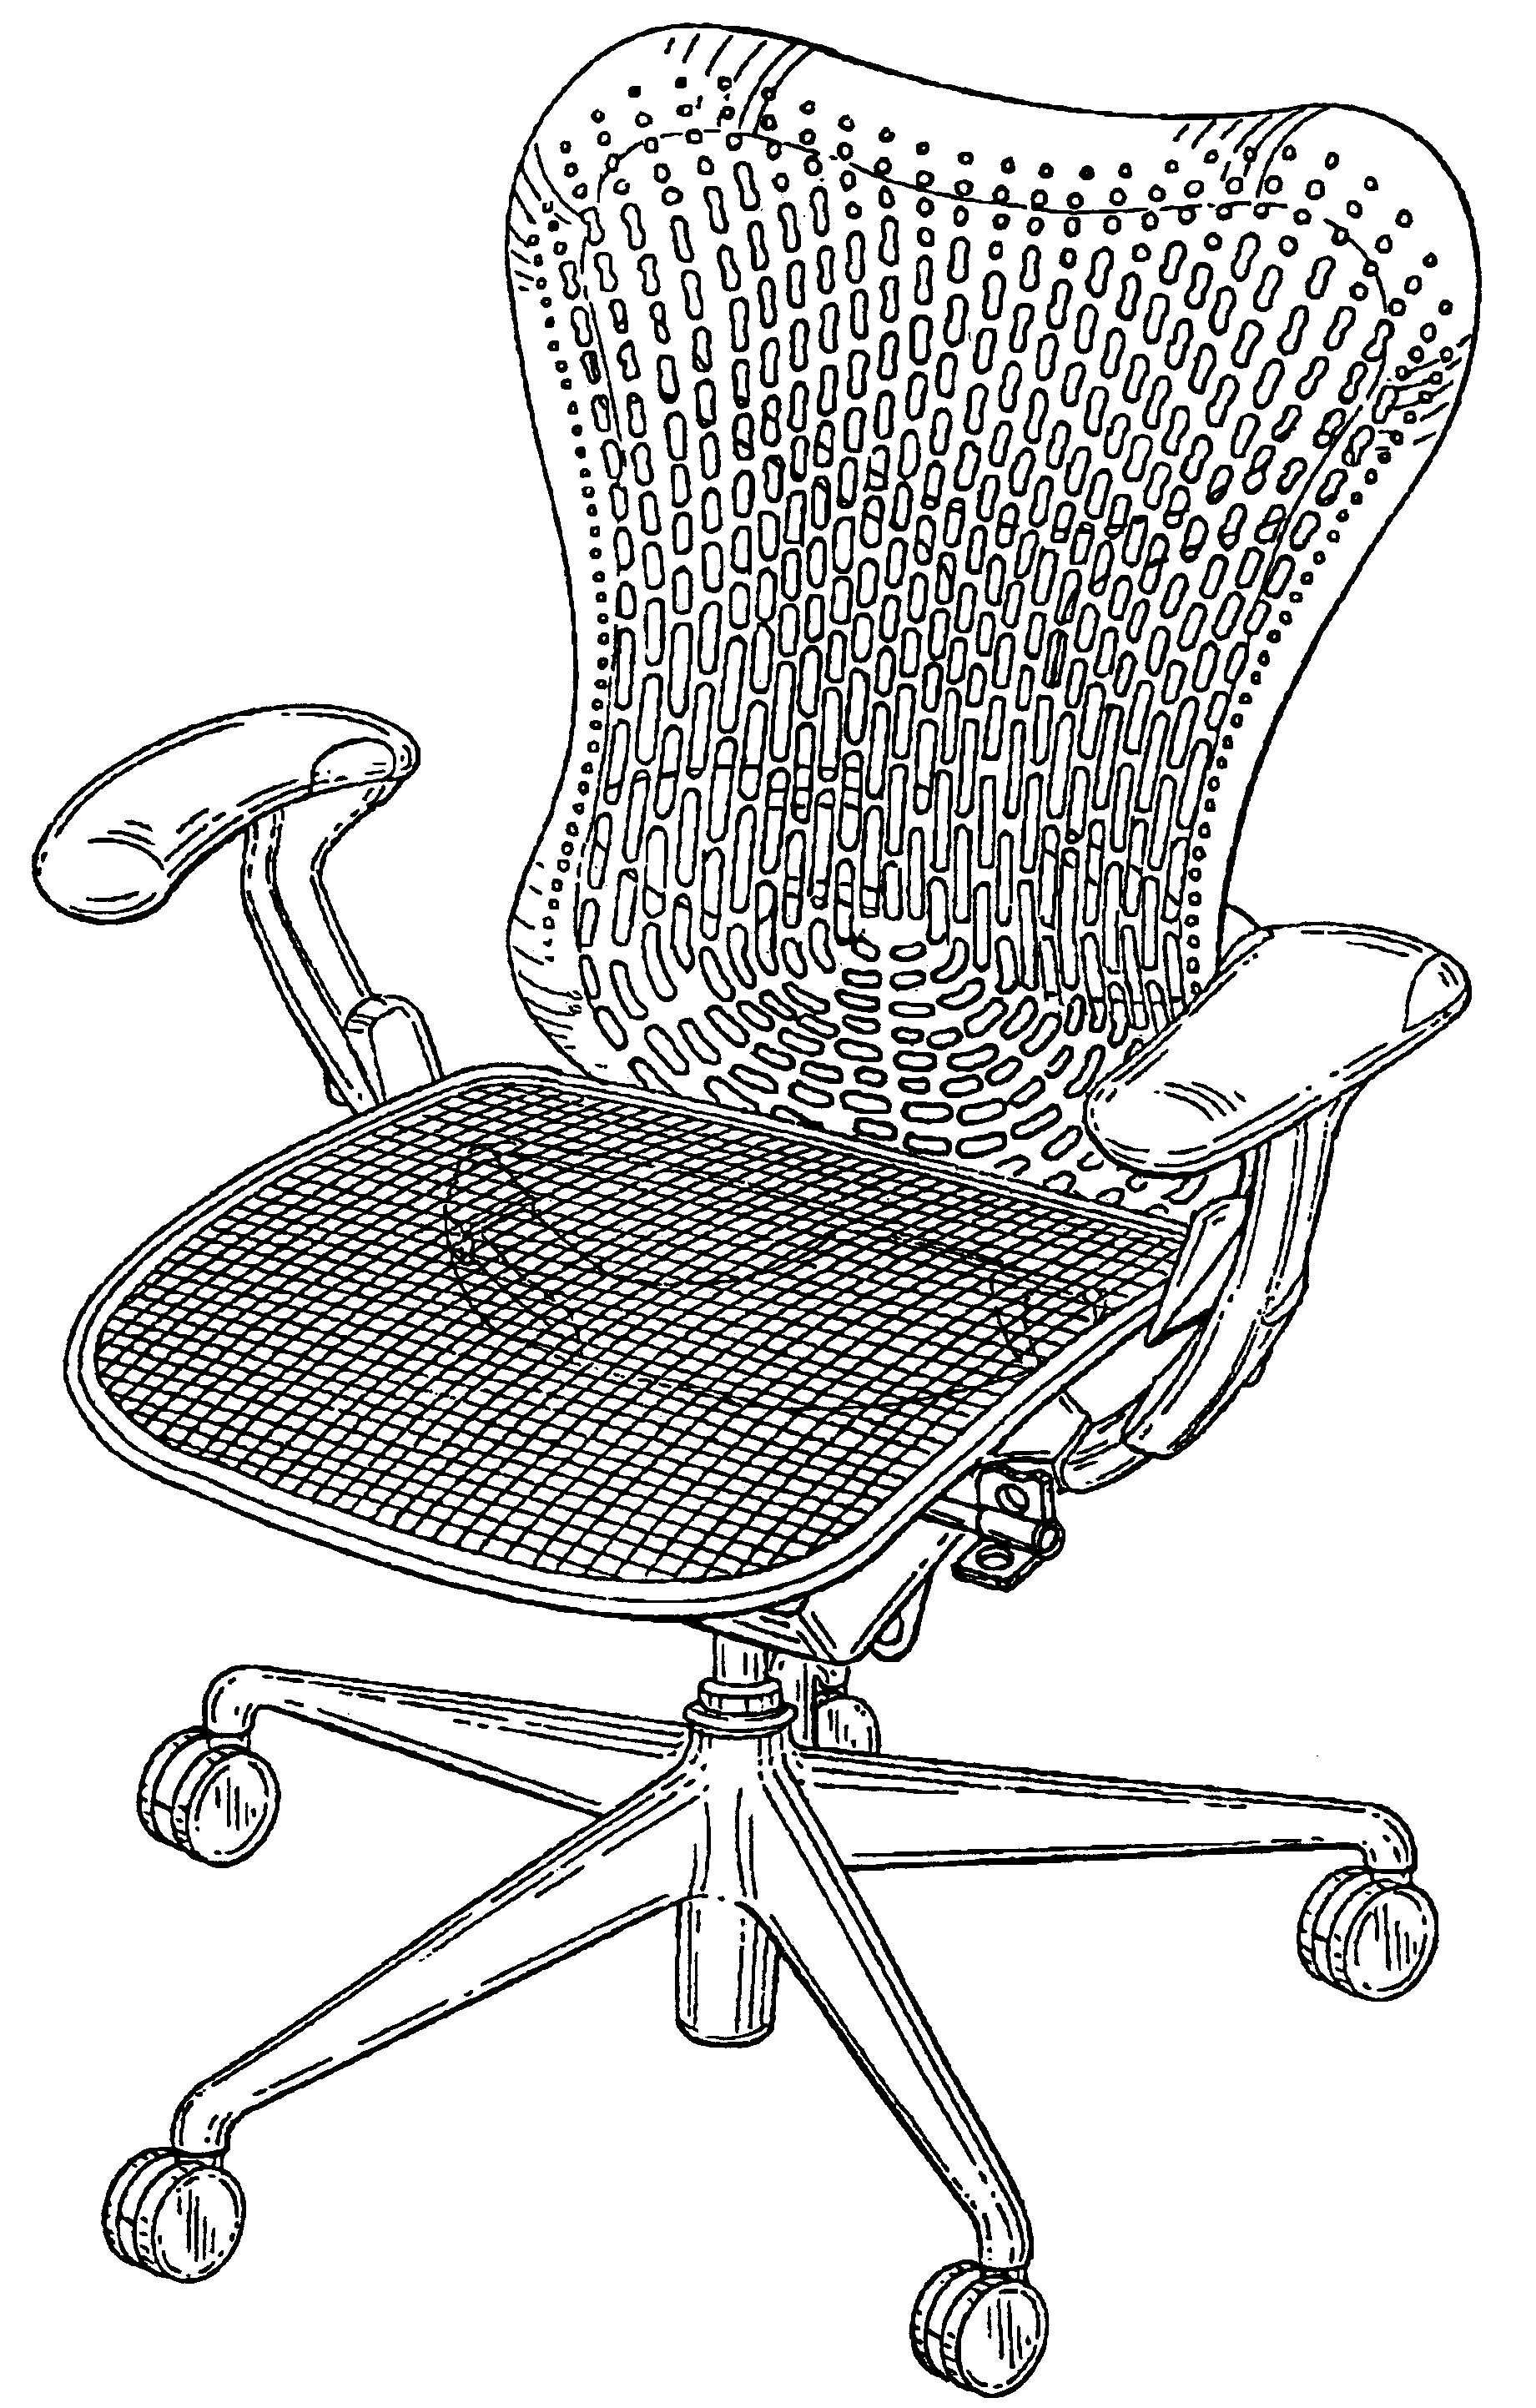 Virginia Design Patent 3